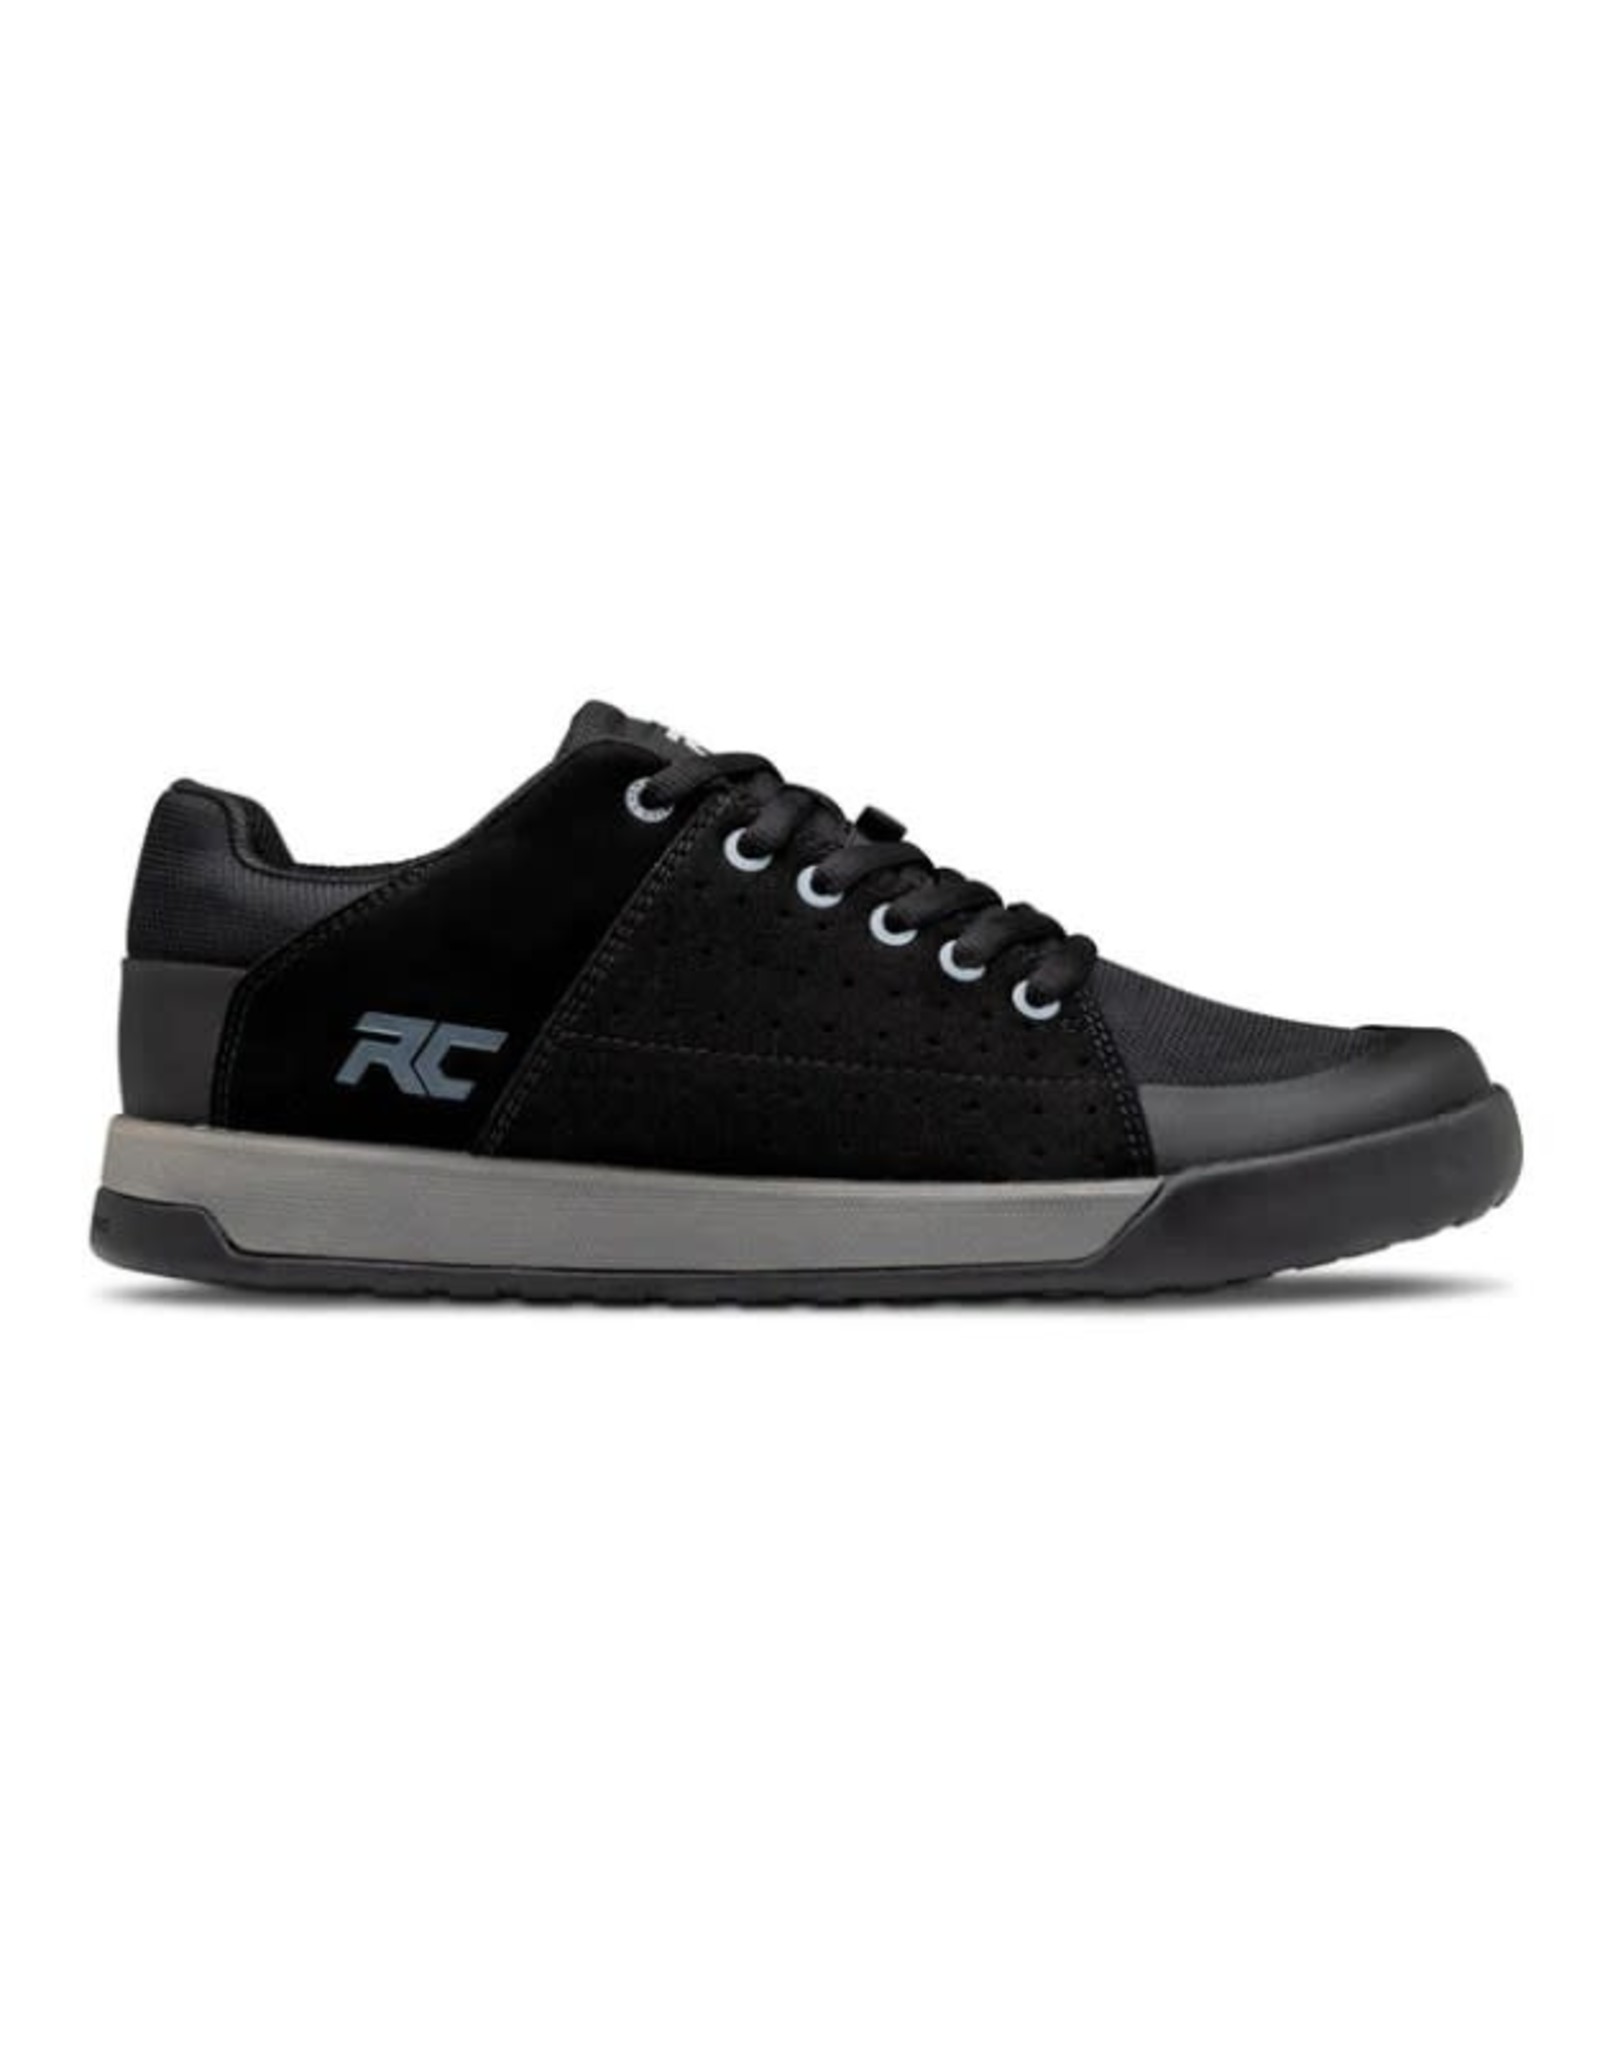 Ride Concepts Shoes RC Livewire mens gen2